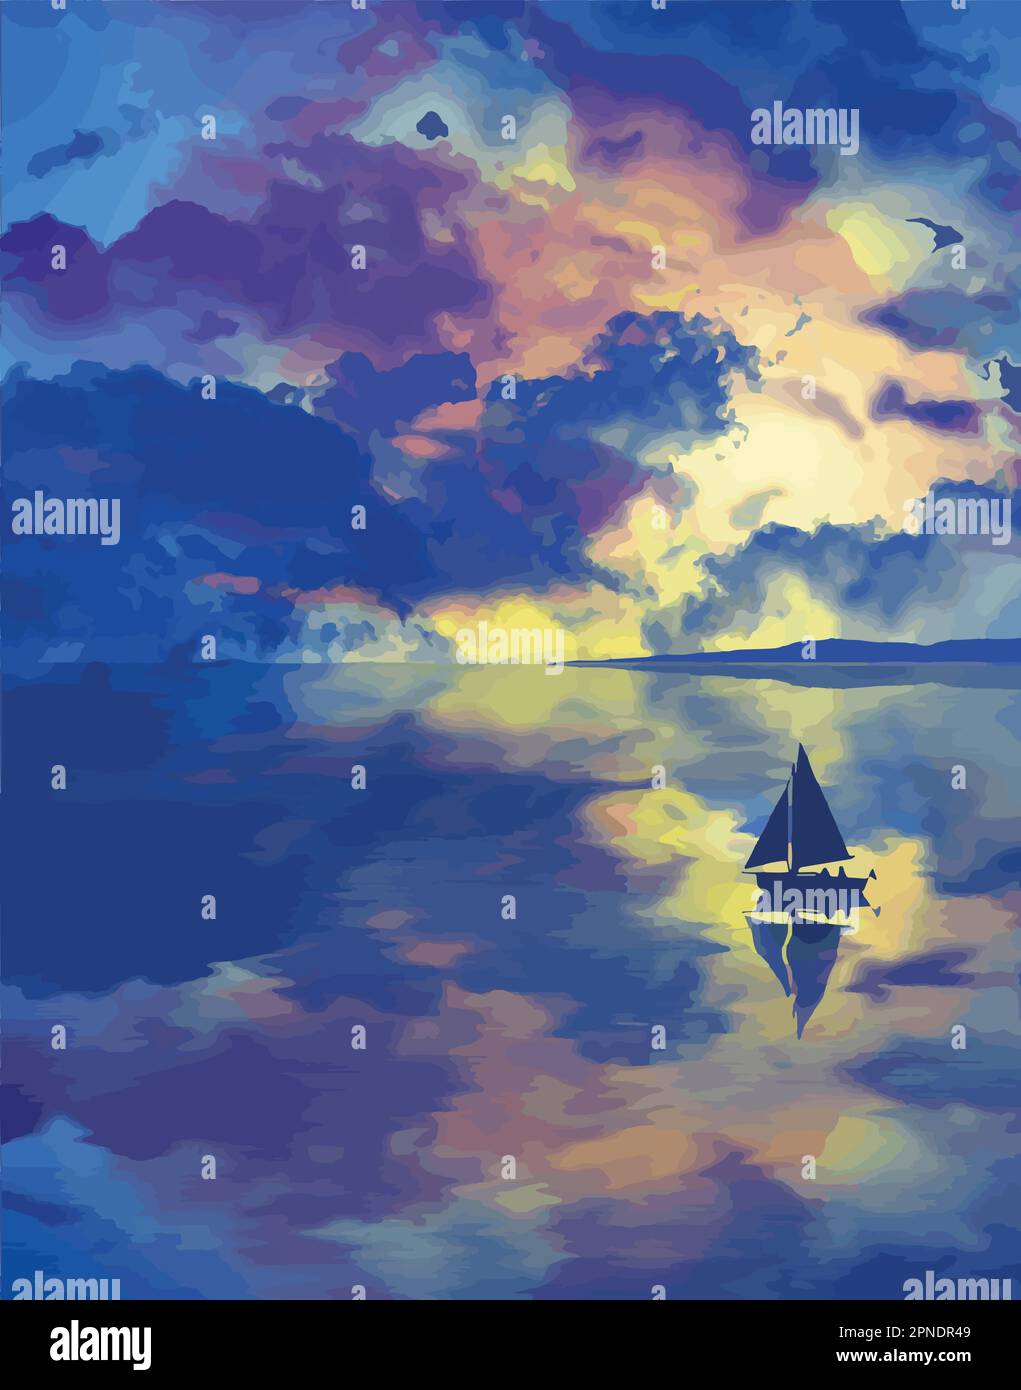 Un bel cielo crepuscolo con nuvole colorate si riflette in un lago dove una barca a vela è galleggiante. Si tratta di un'immagine vettoriale. Illustrazione Vettoriale